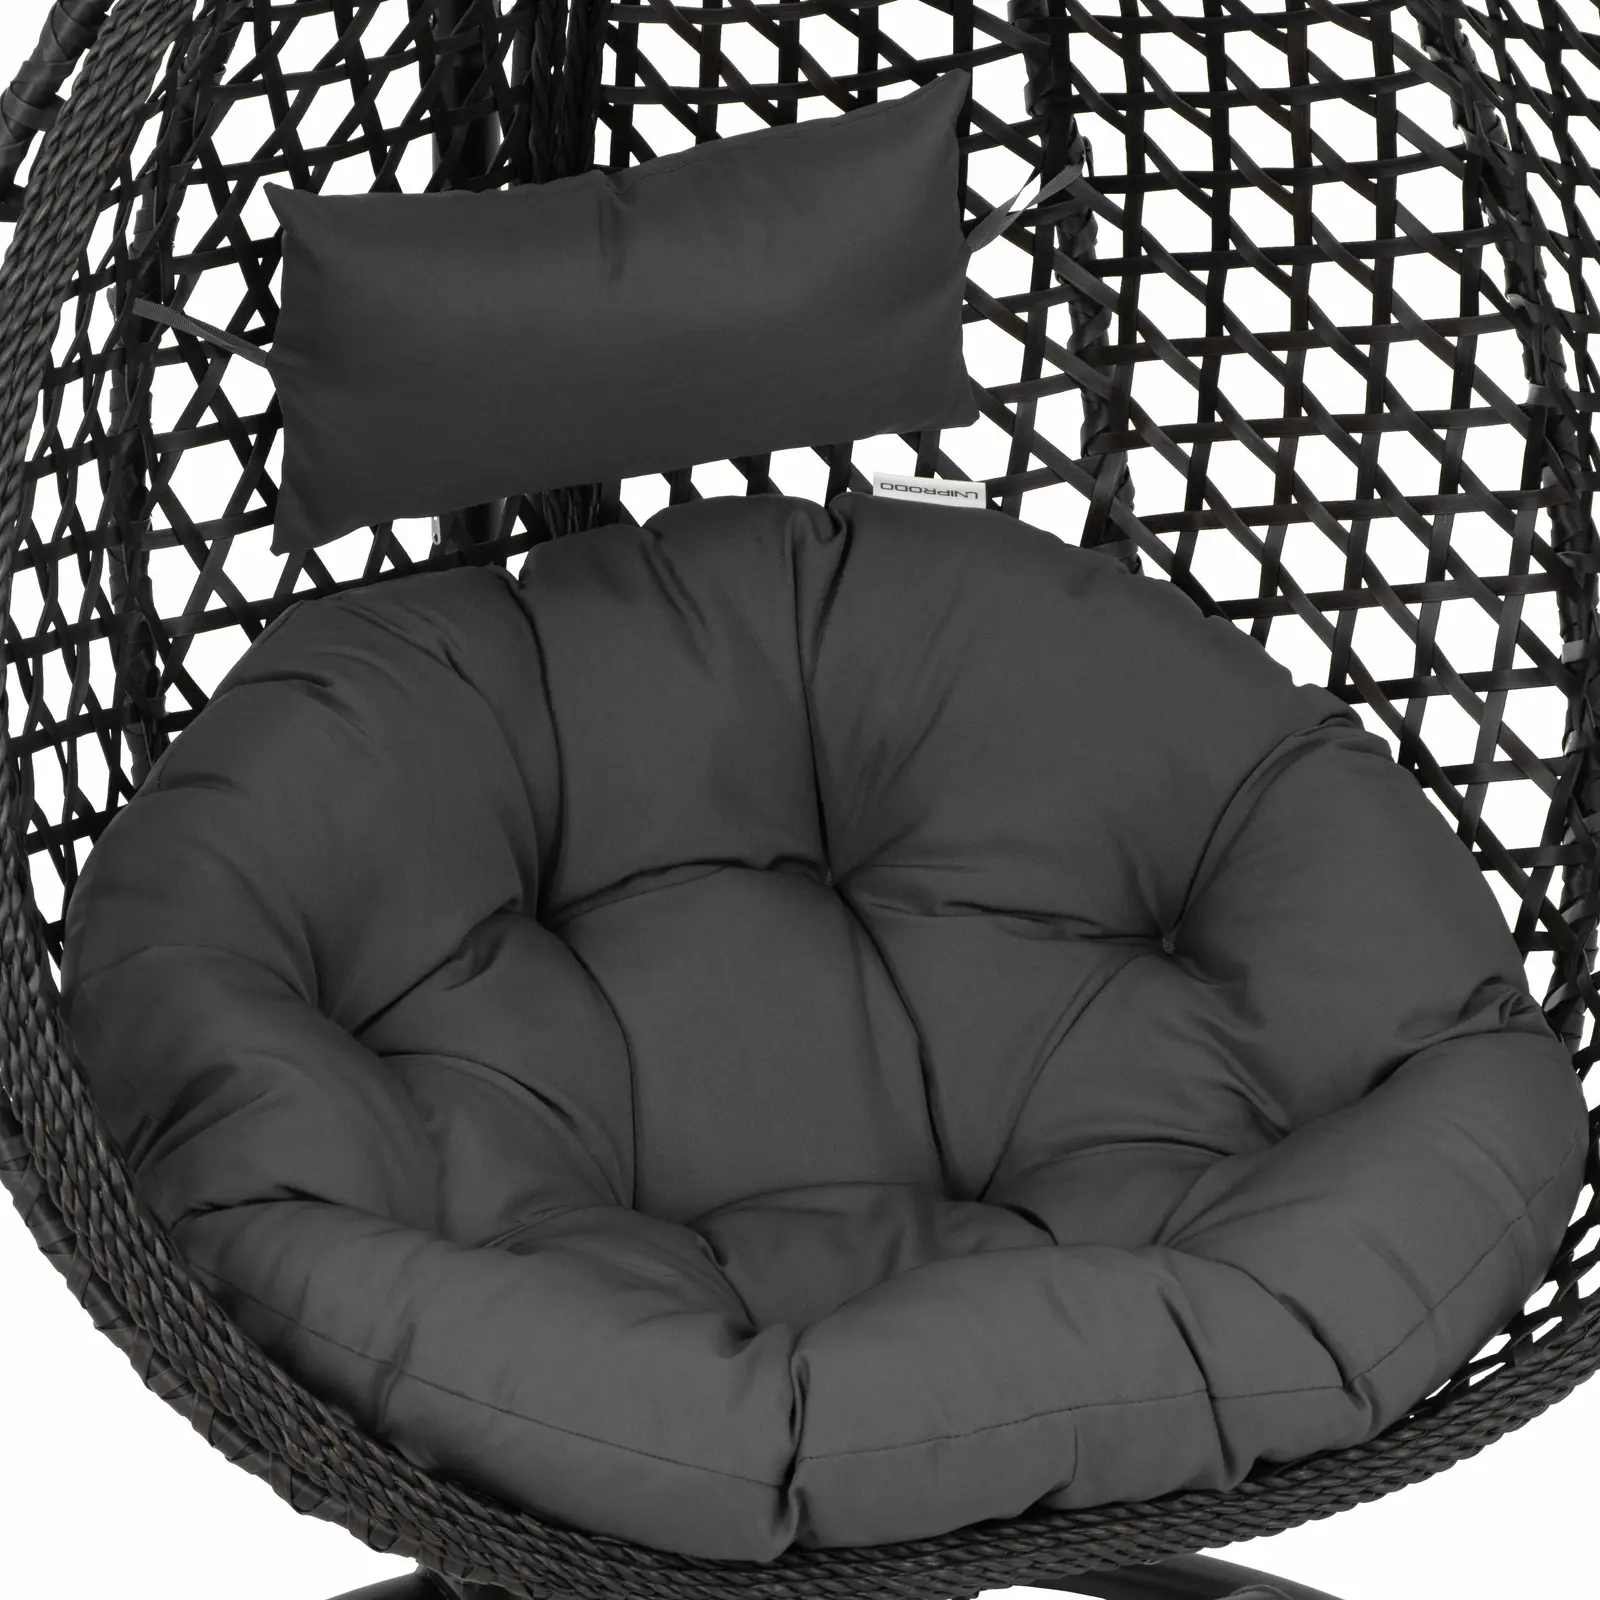 Buitenhangstoel met frame - opklapbare zitting - zwart/grijs - druppelvorm